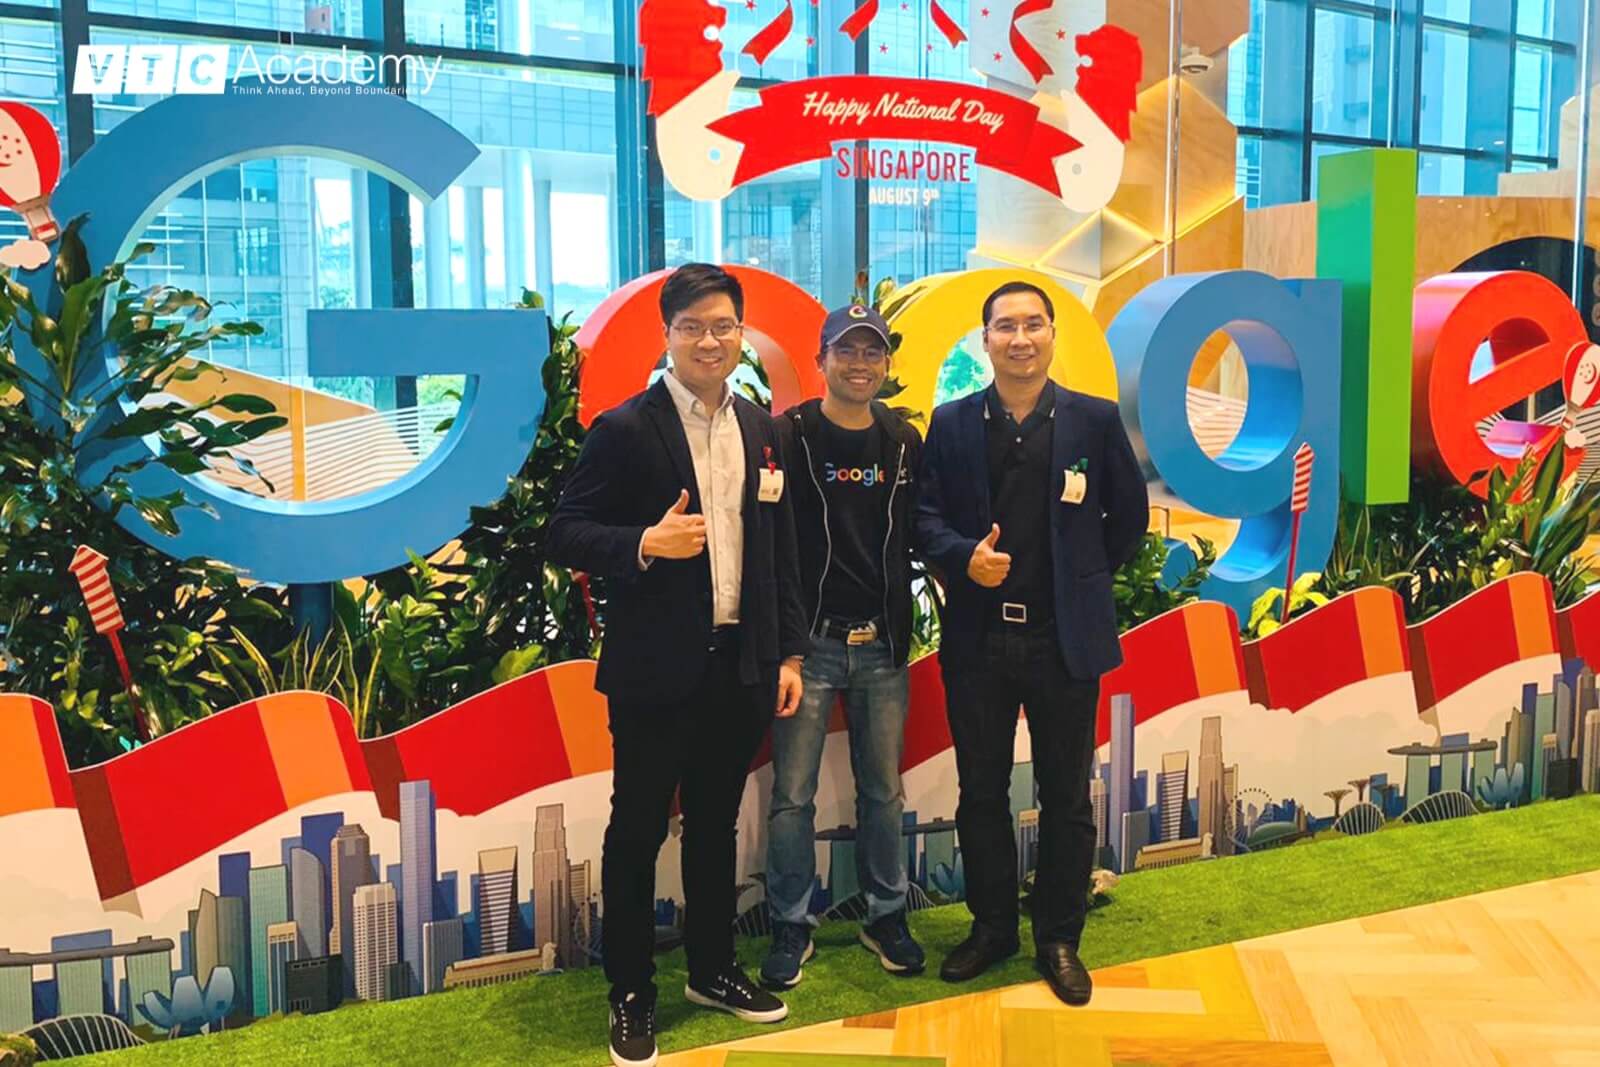 Review VTC Academy: VTC Academy’s special visit to Google Singapore.